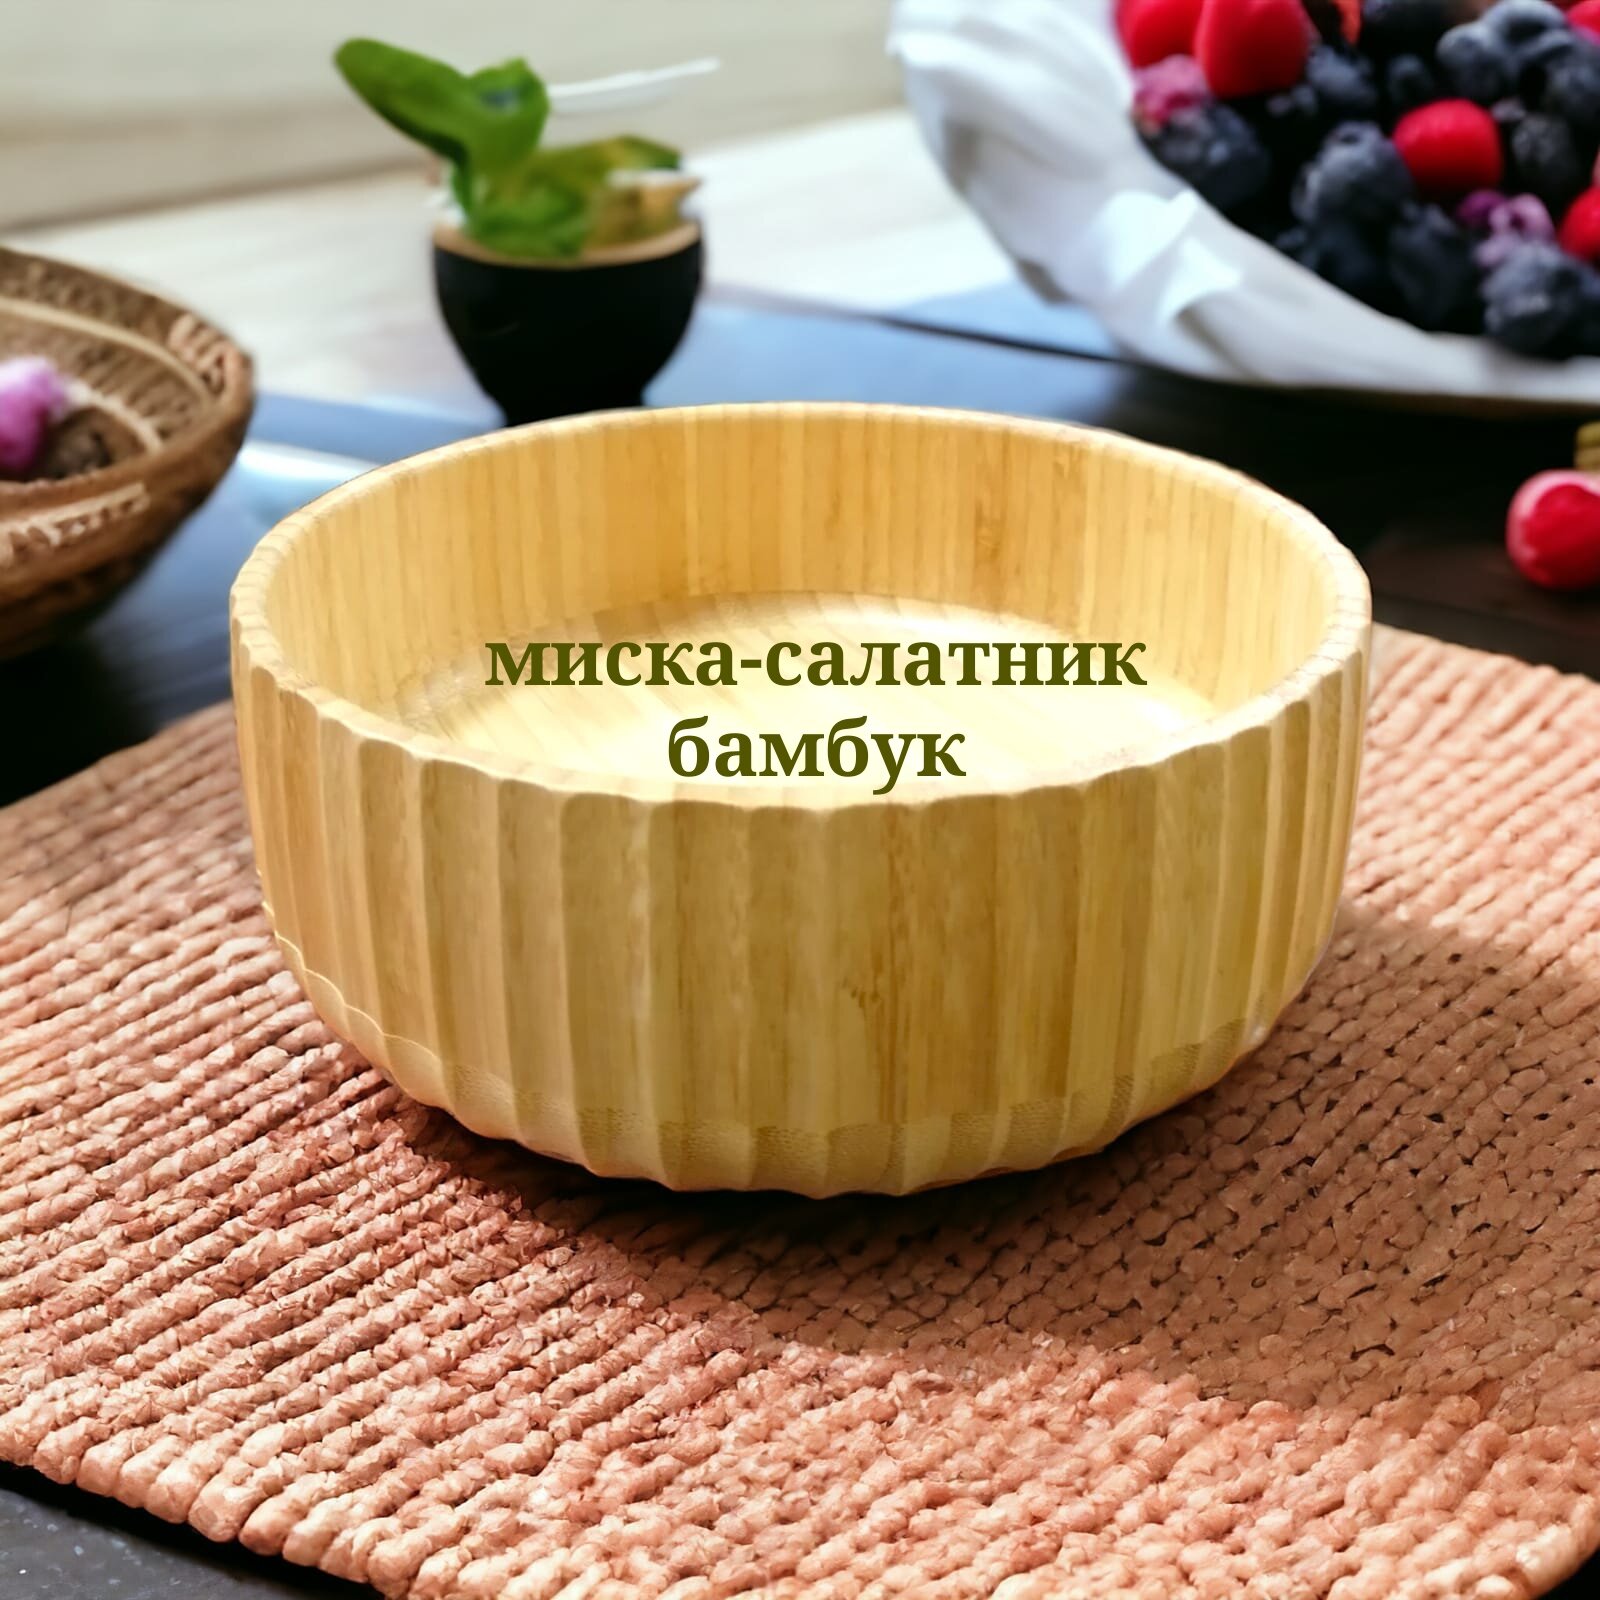 Миска бамбуковая/ салатник / блюдо для подачи из бамбука 18 смх7см